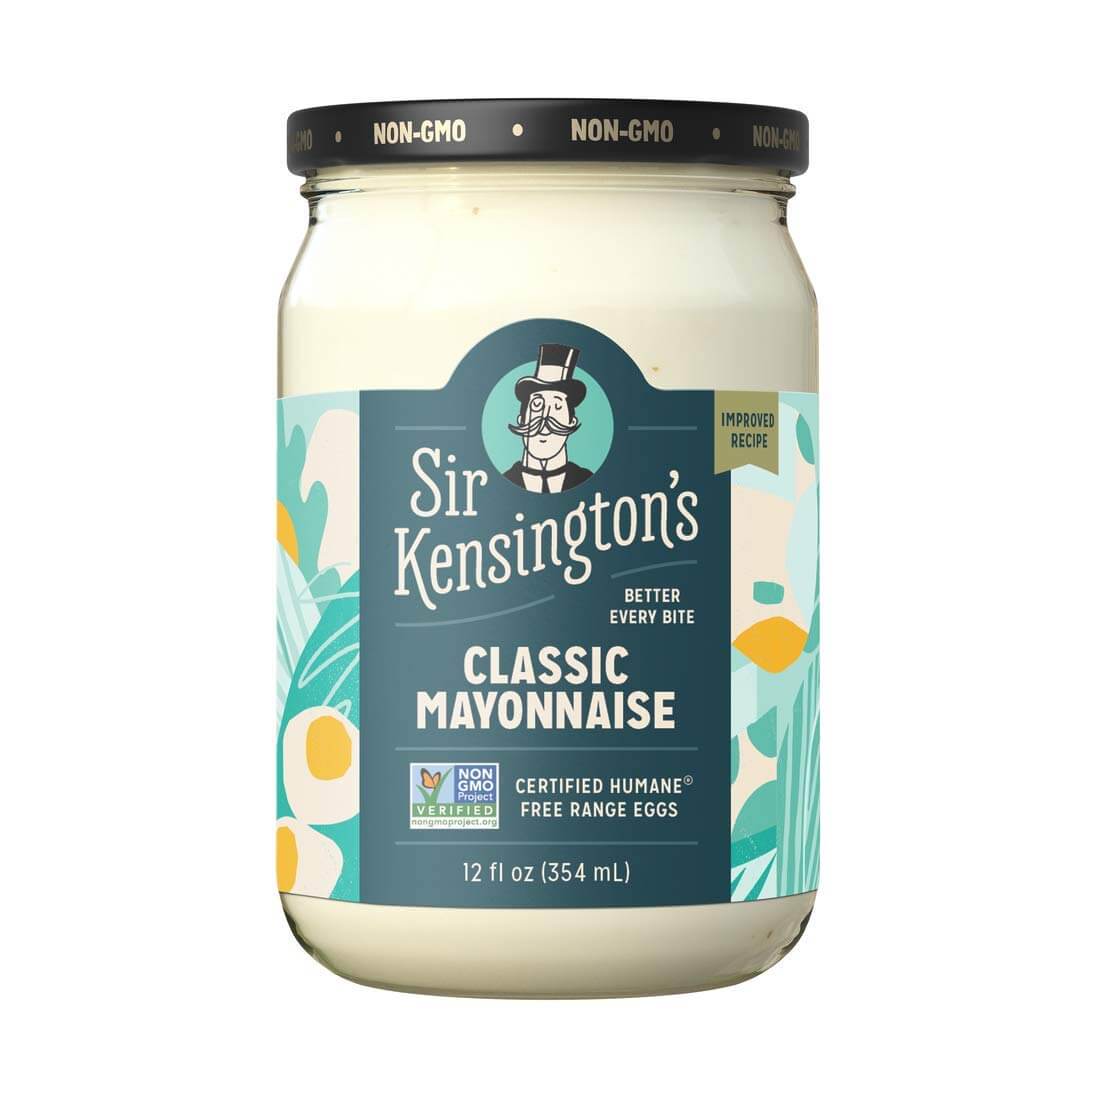 Sir Kensington’s Classic Mayonnaise